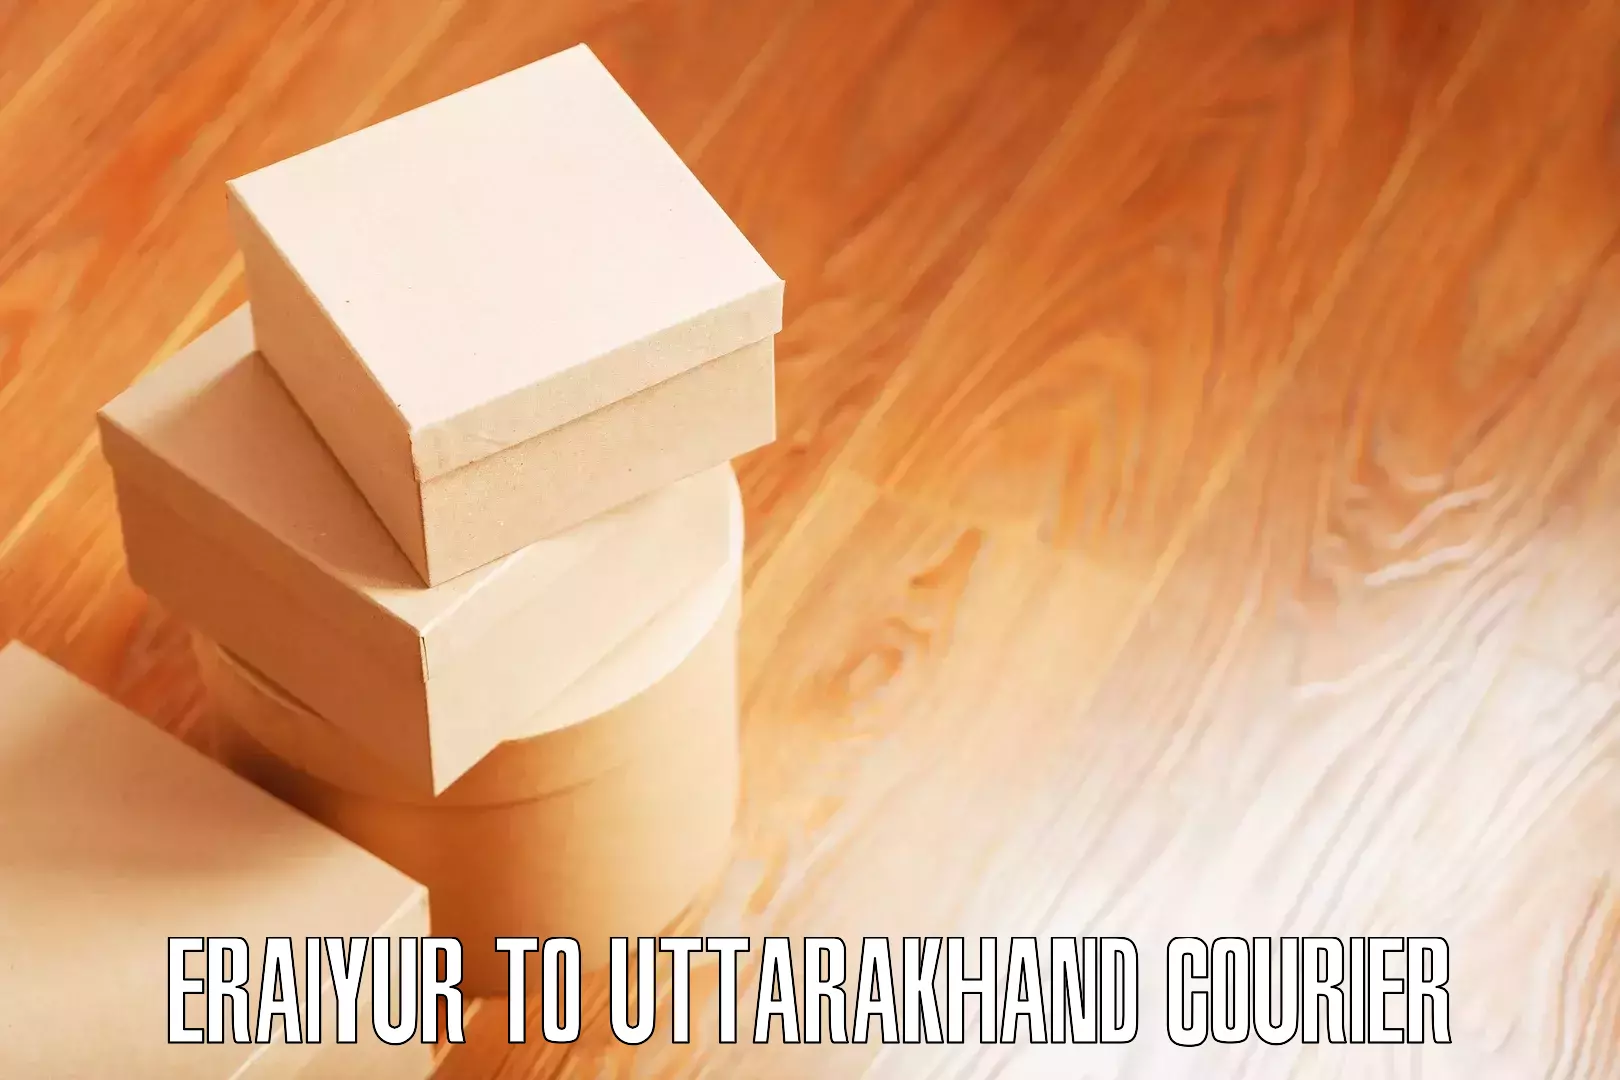 Professional moving company Eraiyur to Uttarakhand